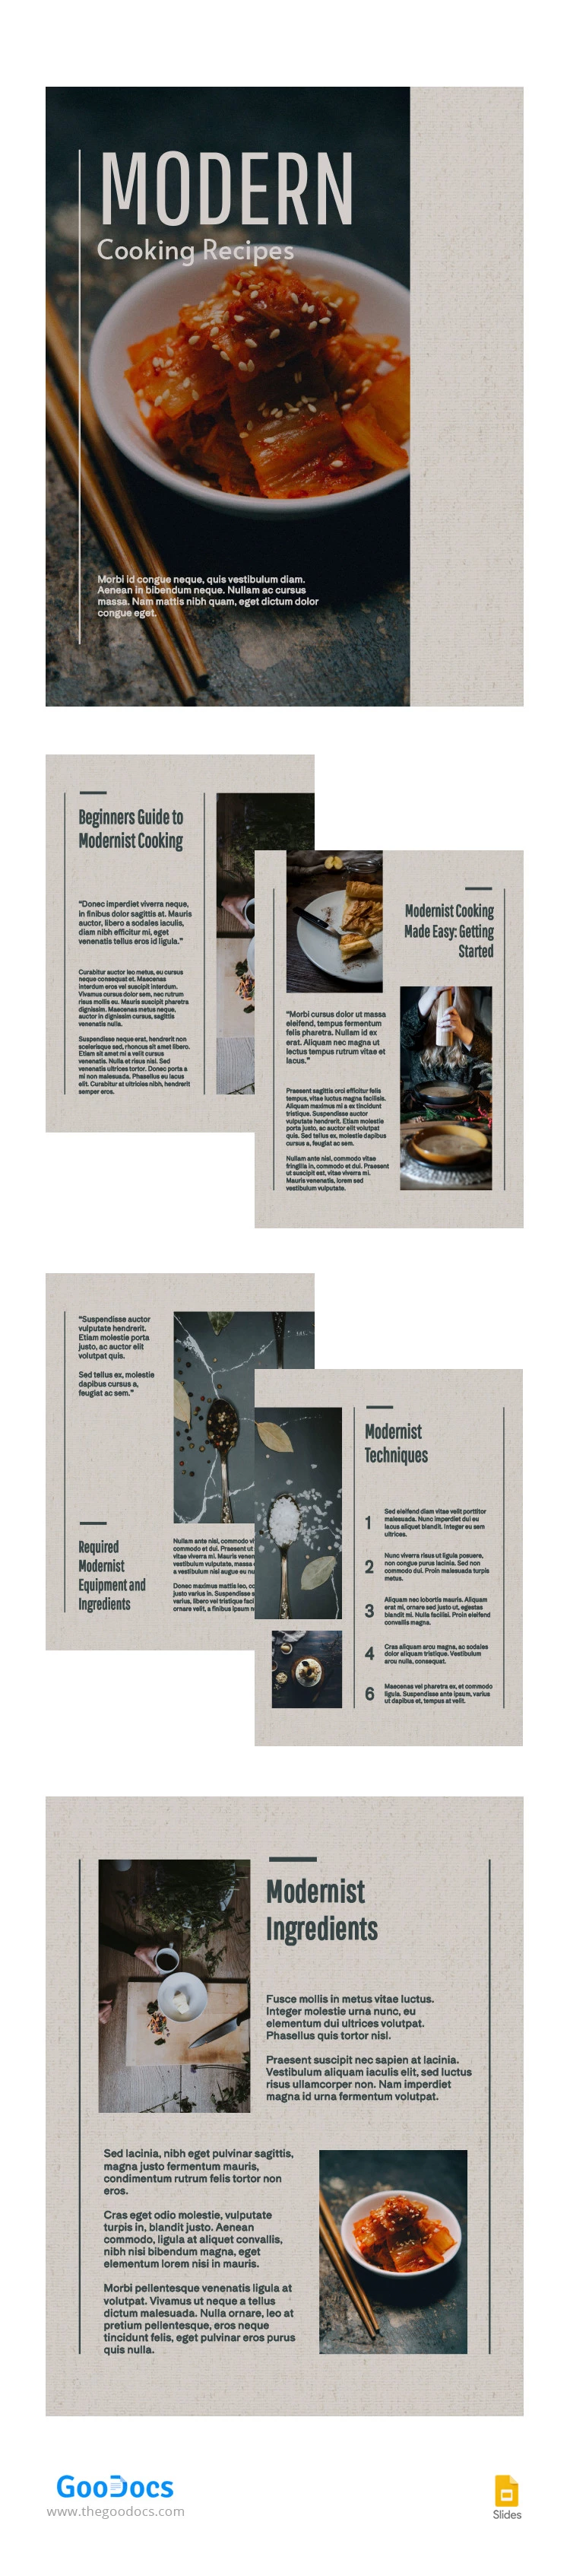 Magazine de recettes de cuisine modernes - free Google Docs Template - 10065325